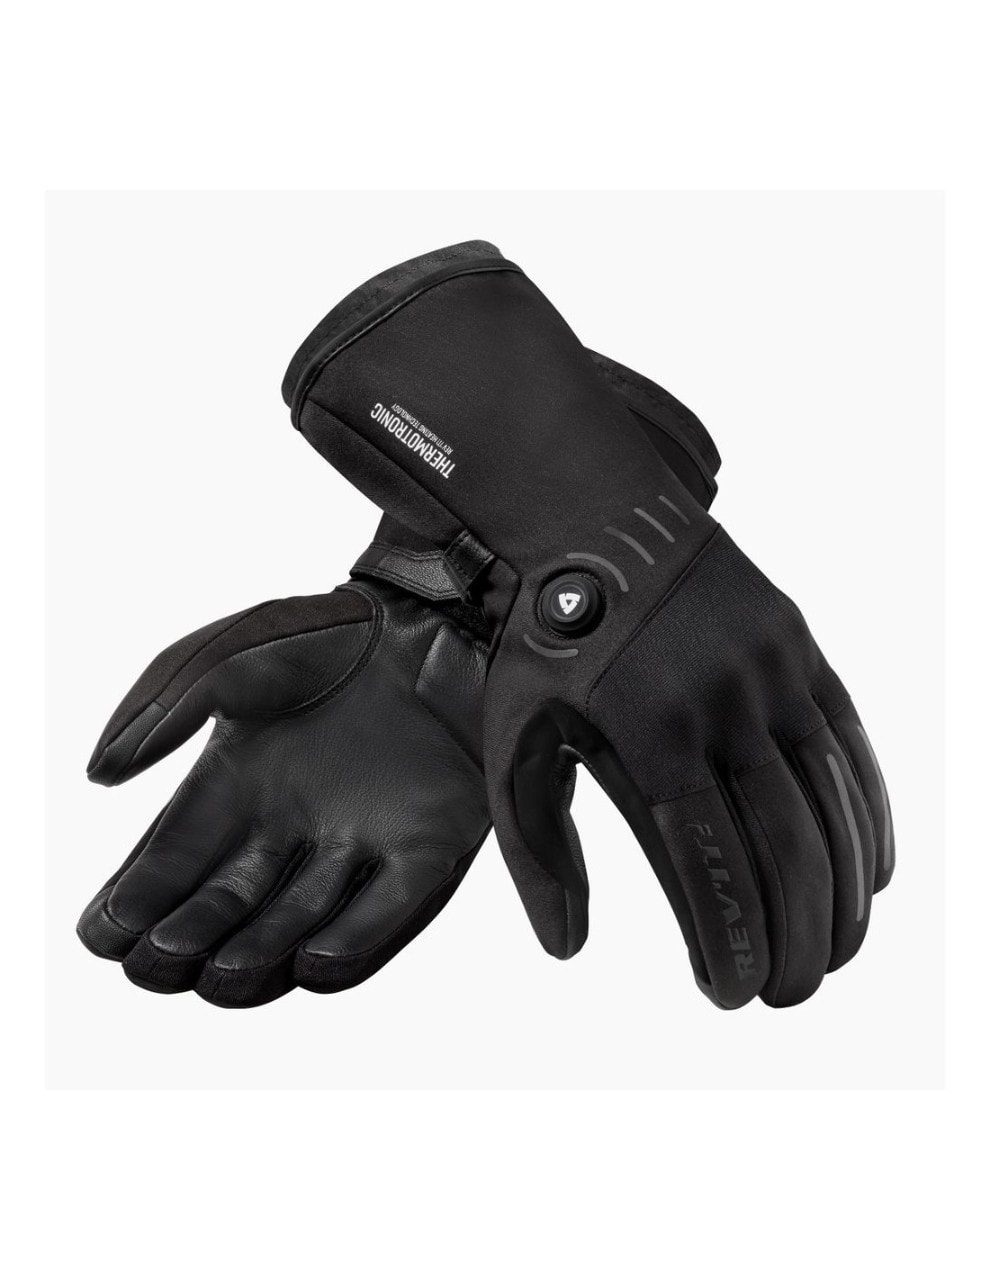 Migliori guanti da moto riscaldati. Opinioni, confronto e prezzo · Motocard